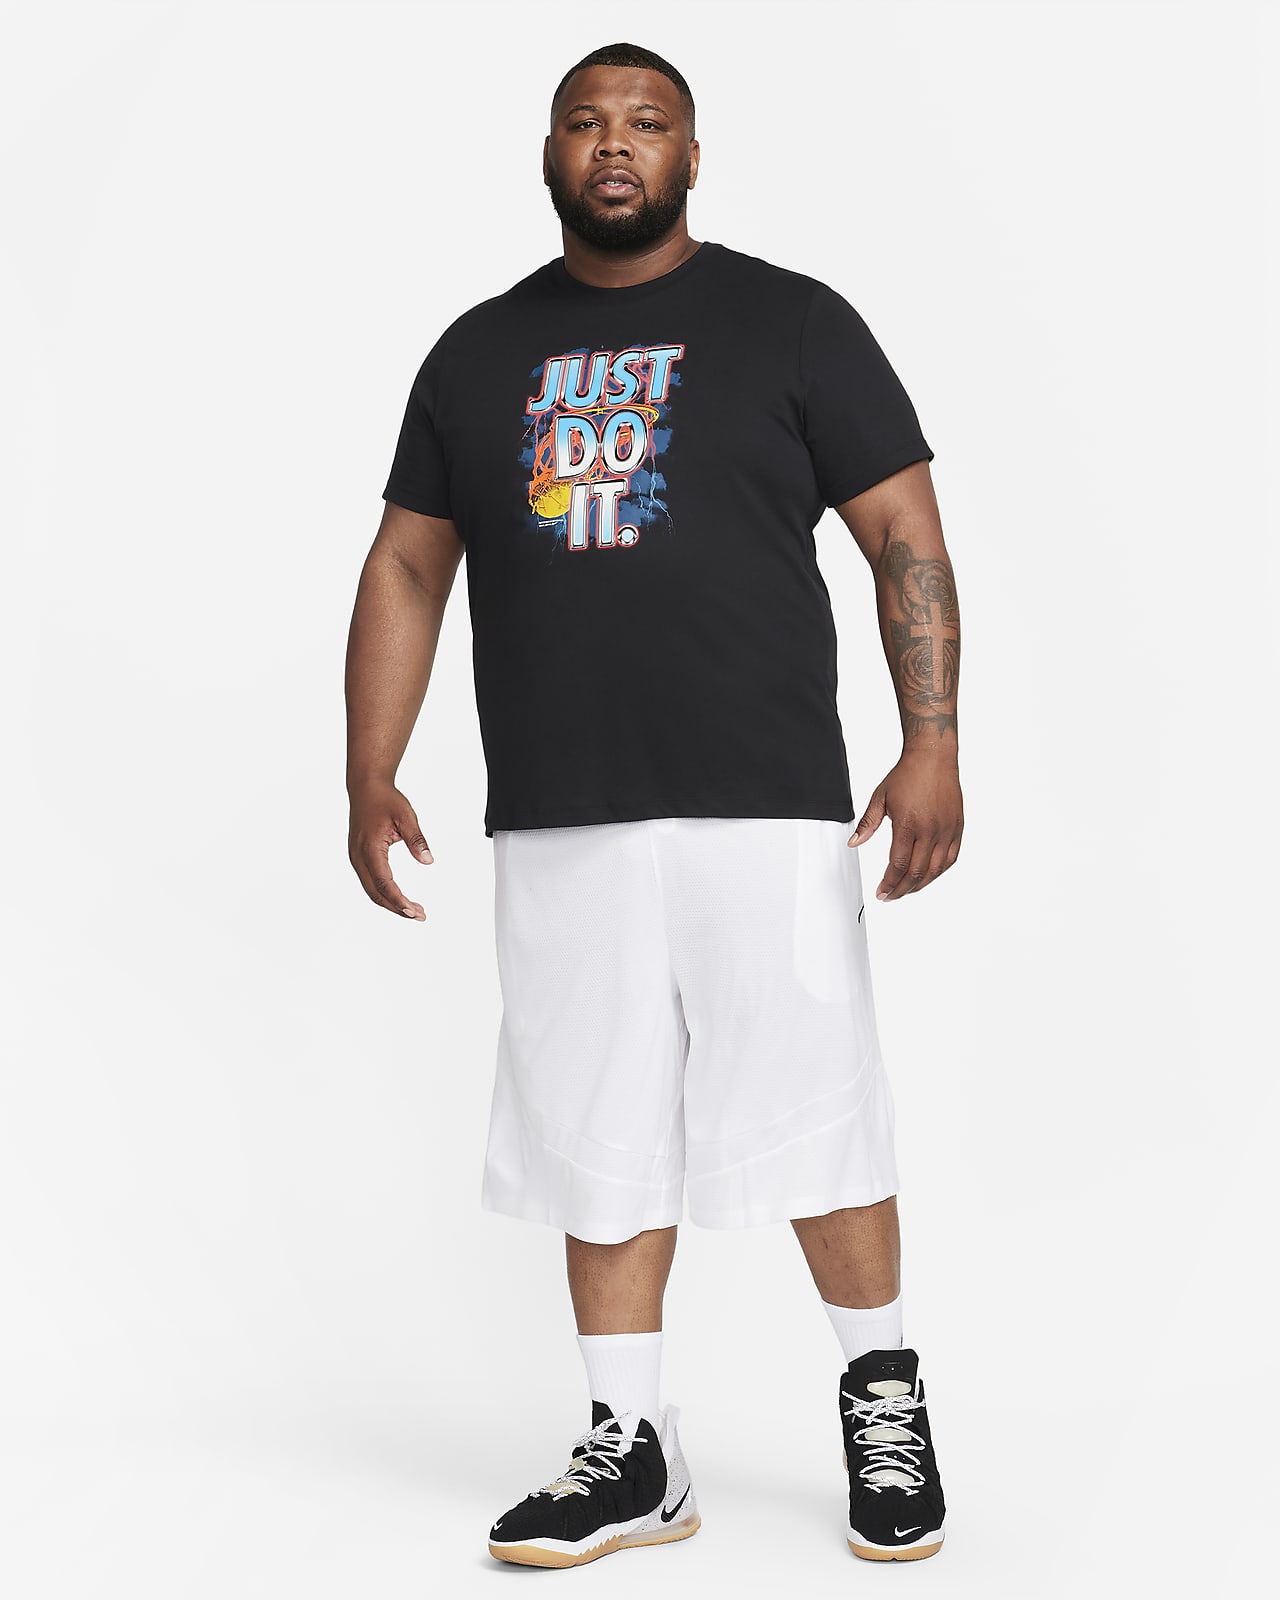 Camiseta Nike Dri-fit De Baloncesto, Hombre - Ropa De Entrenamiento De  Baloncesto